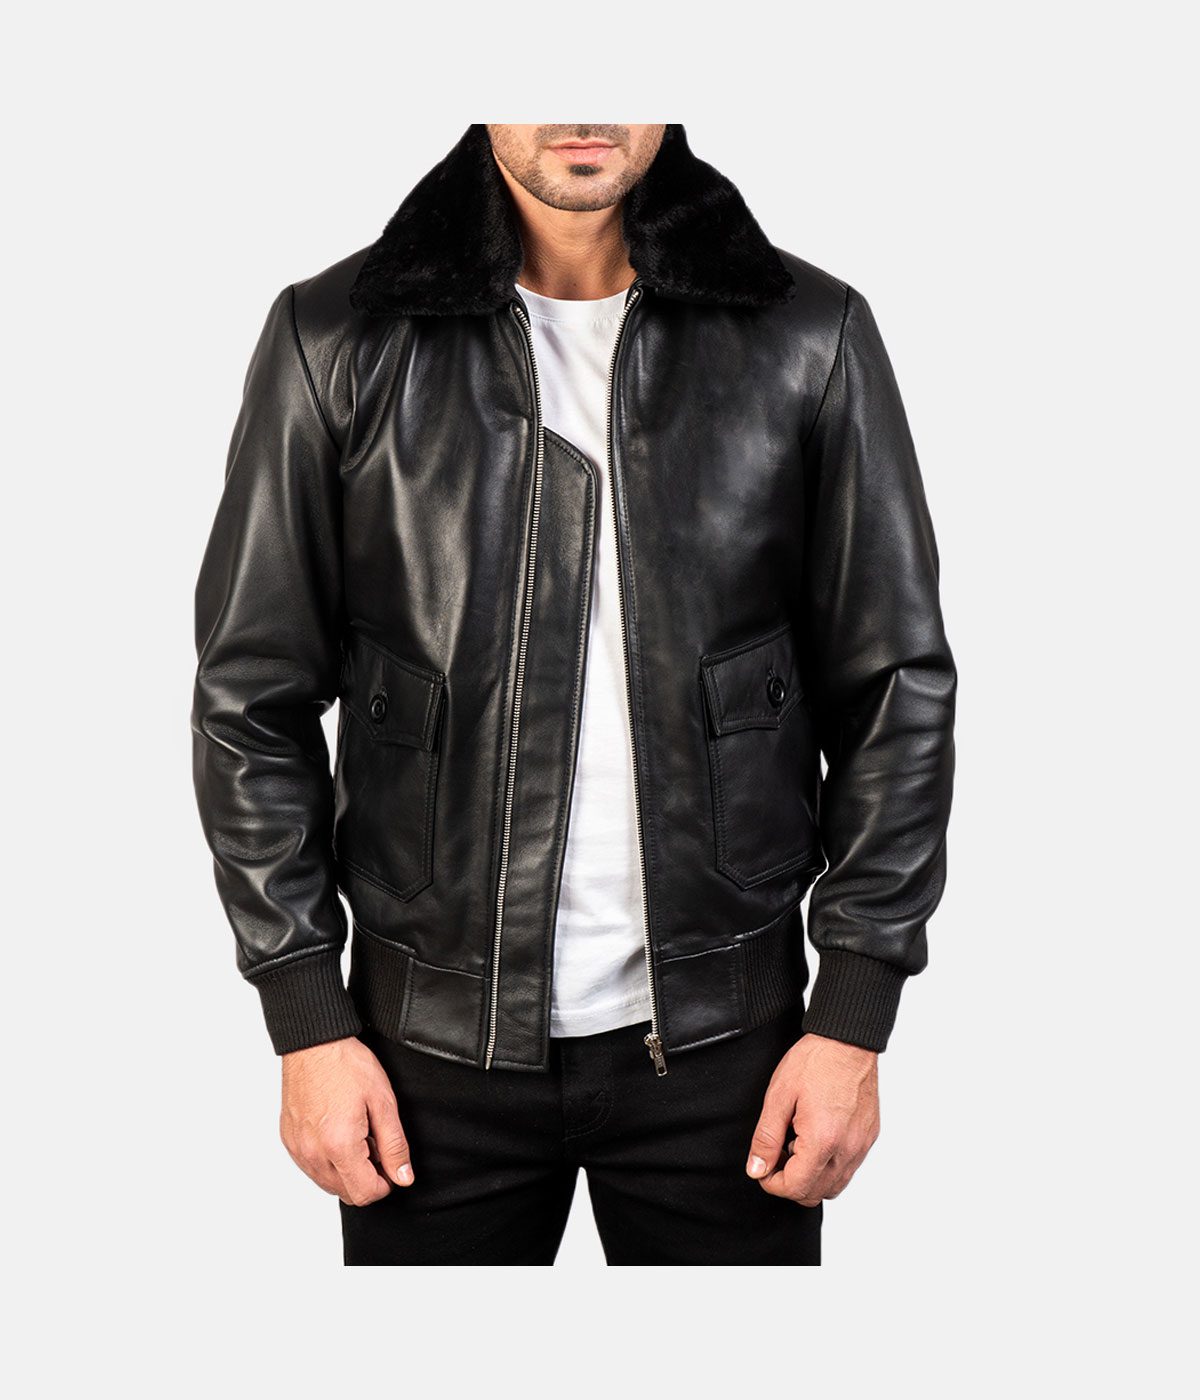 Black Leather Bomber Jacket - Modern Leather Jackets